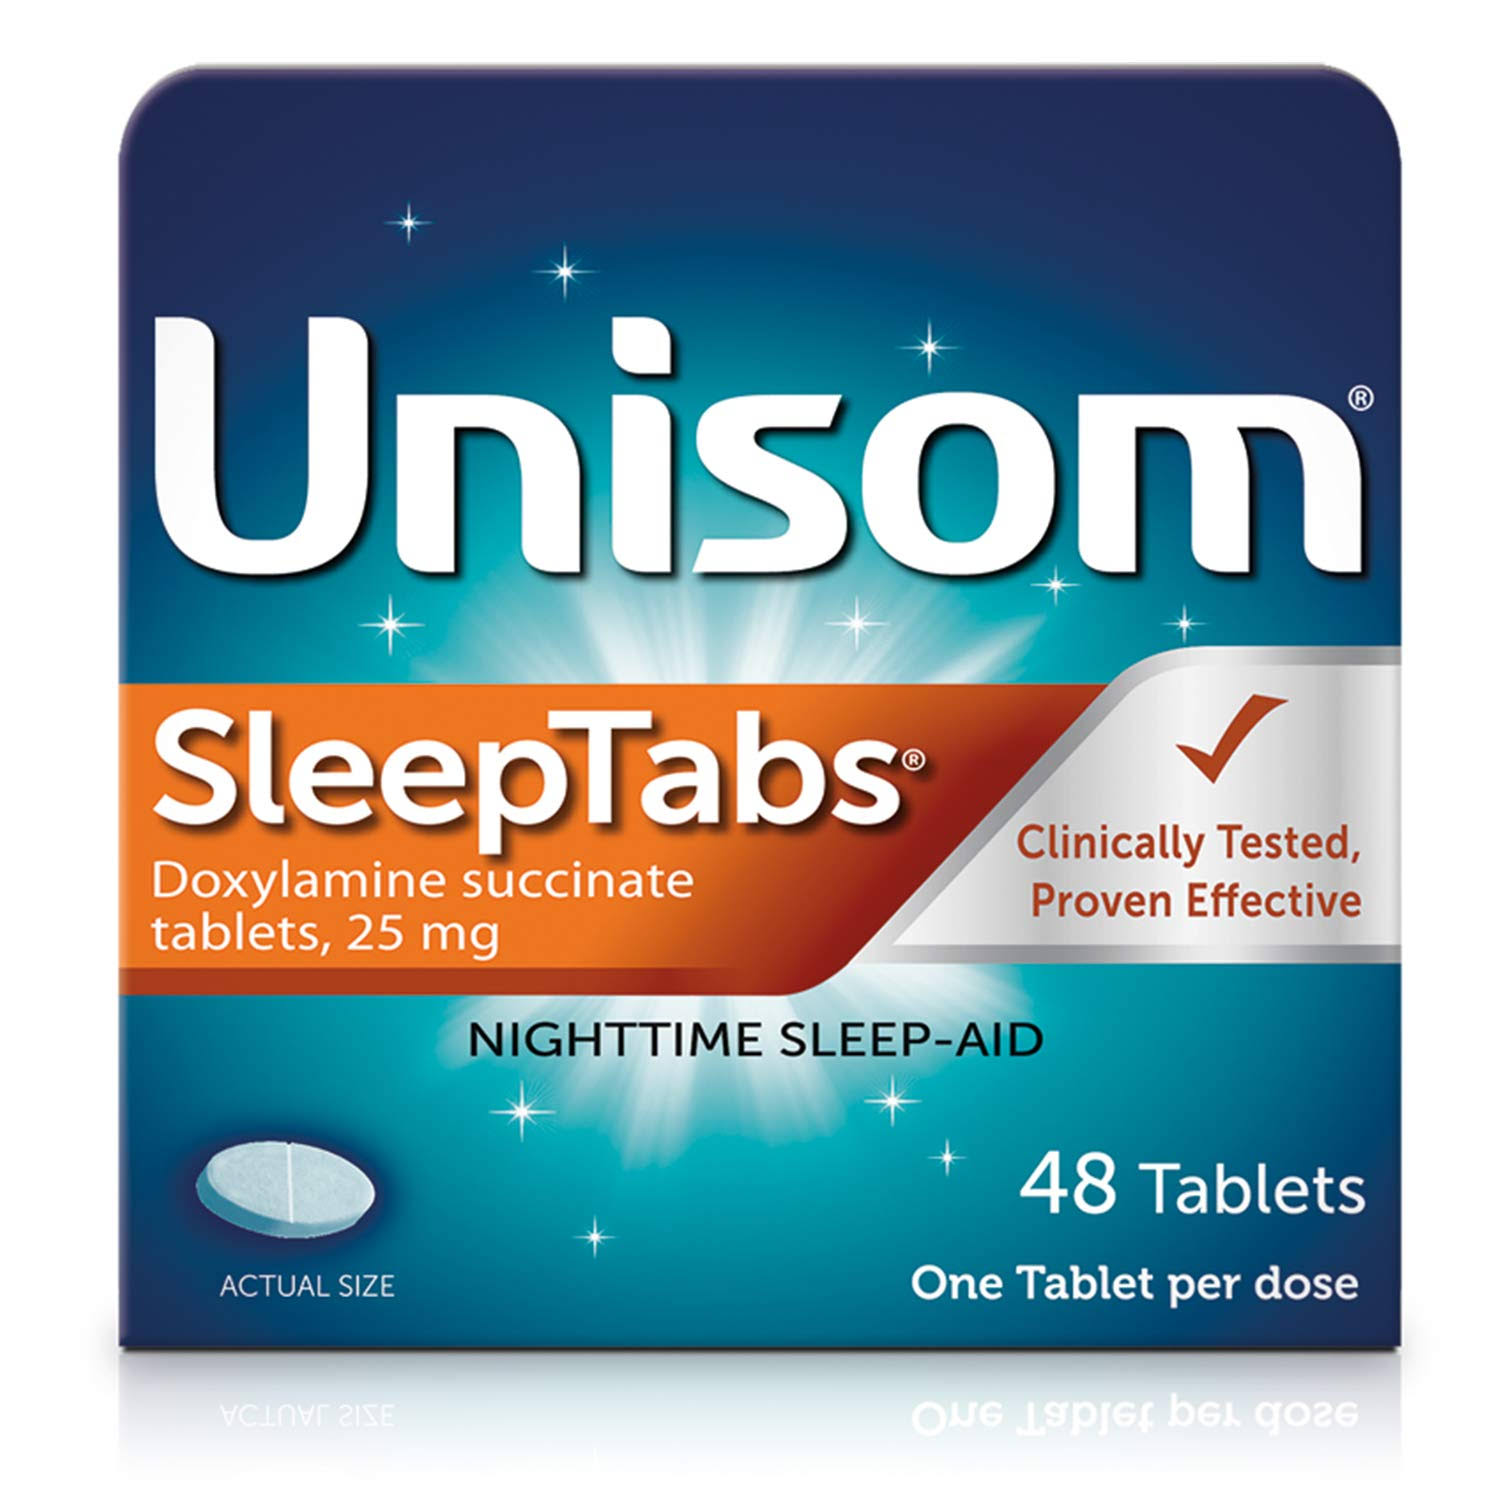 Unisom SleepTabs Nighttime Sleep-Aid Tablets - 48ct